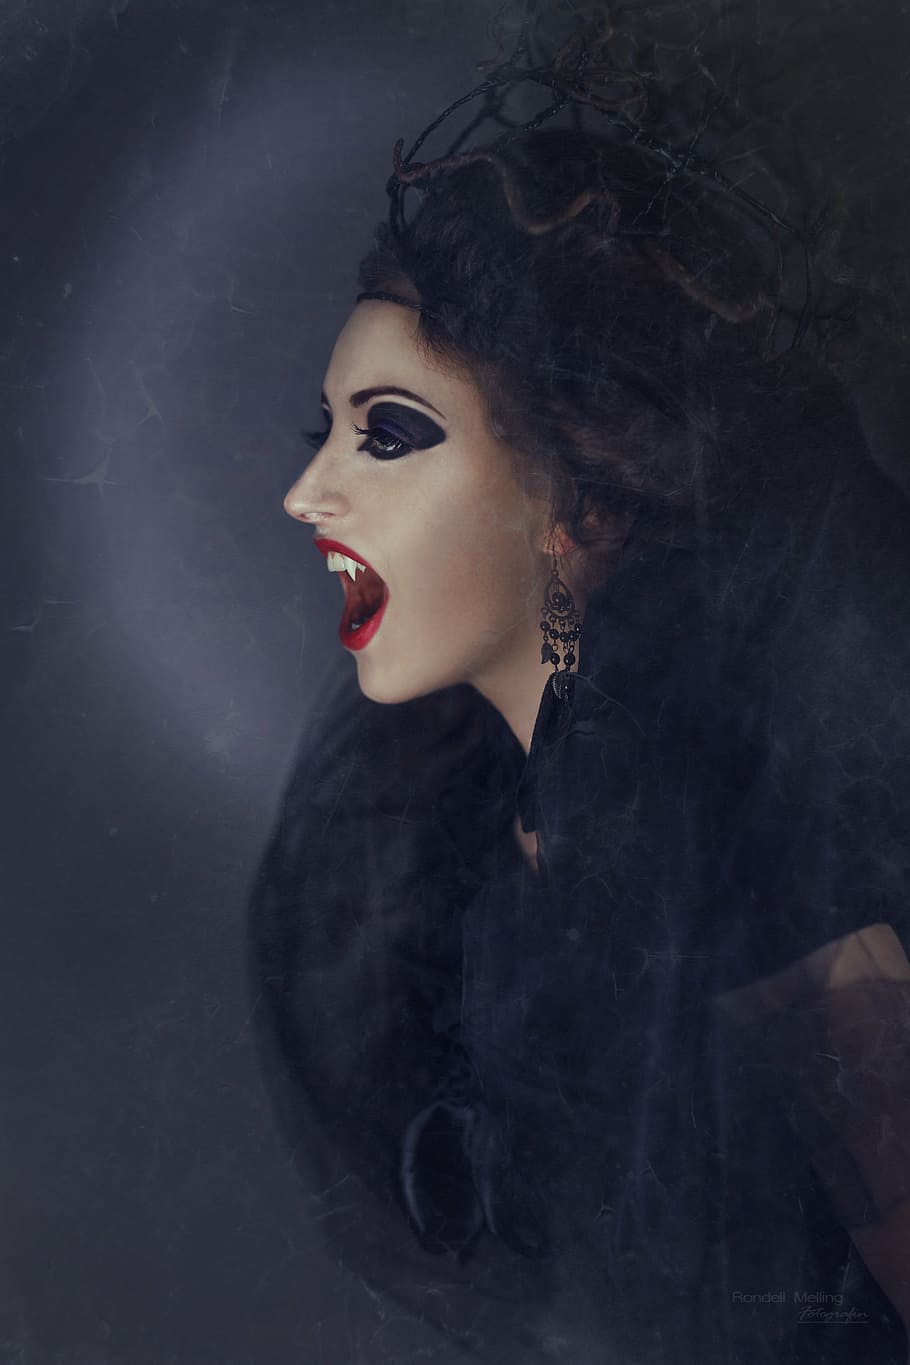 mujer vampiro, vistiendo, negro, superior, vampiro, espeluznante, la bruja, hechicera, mística, cuento de hadas